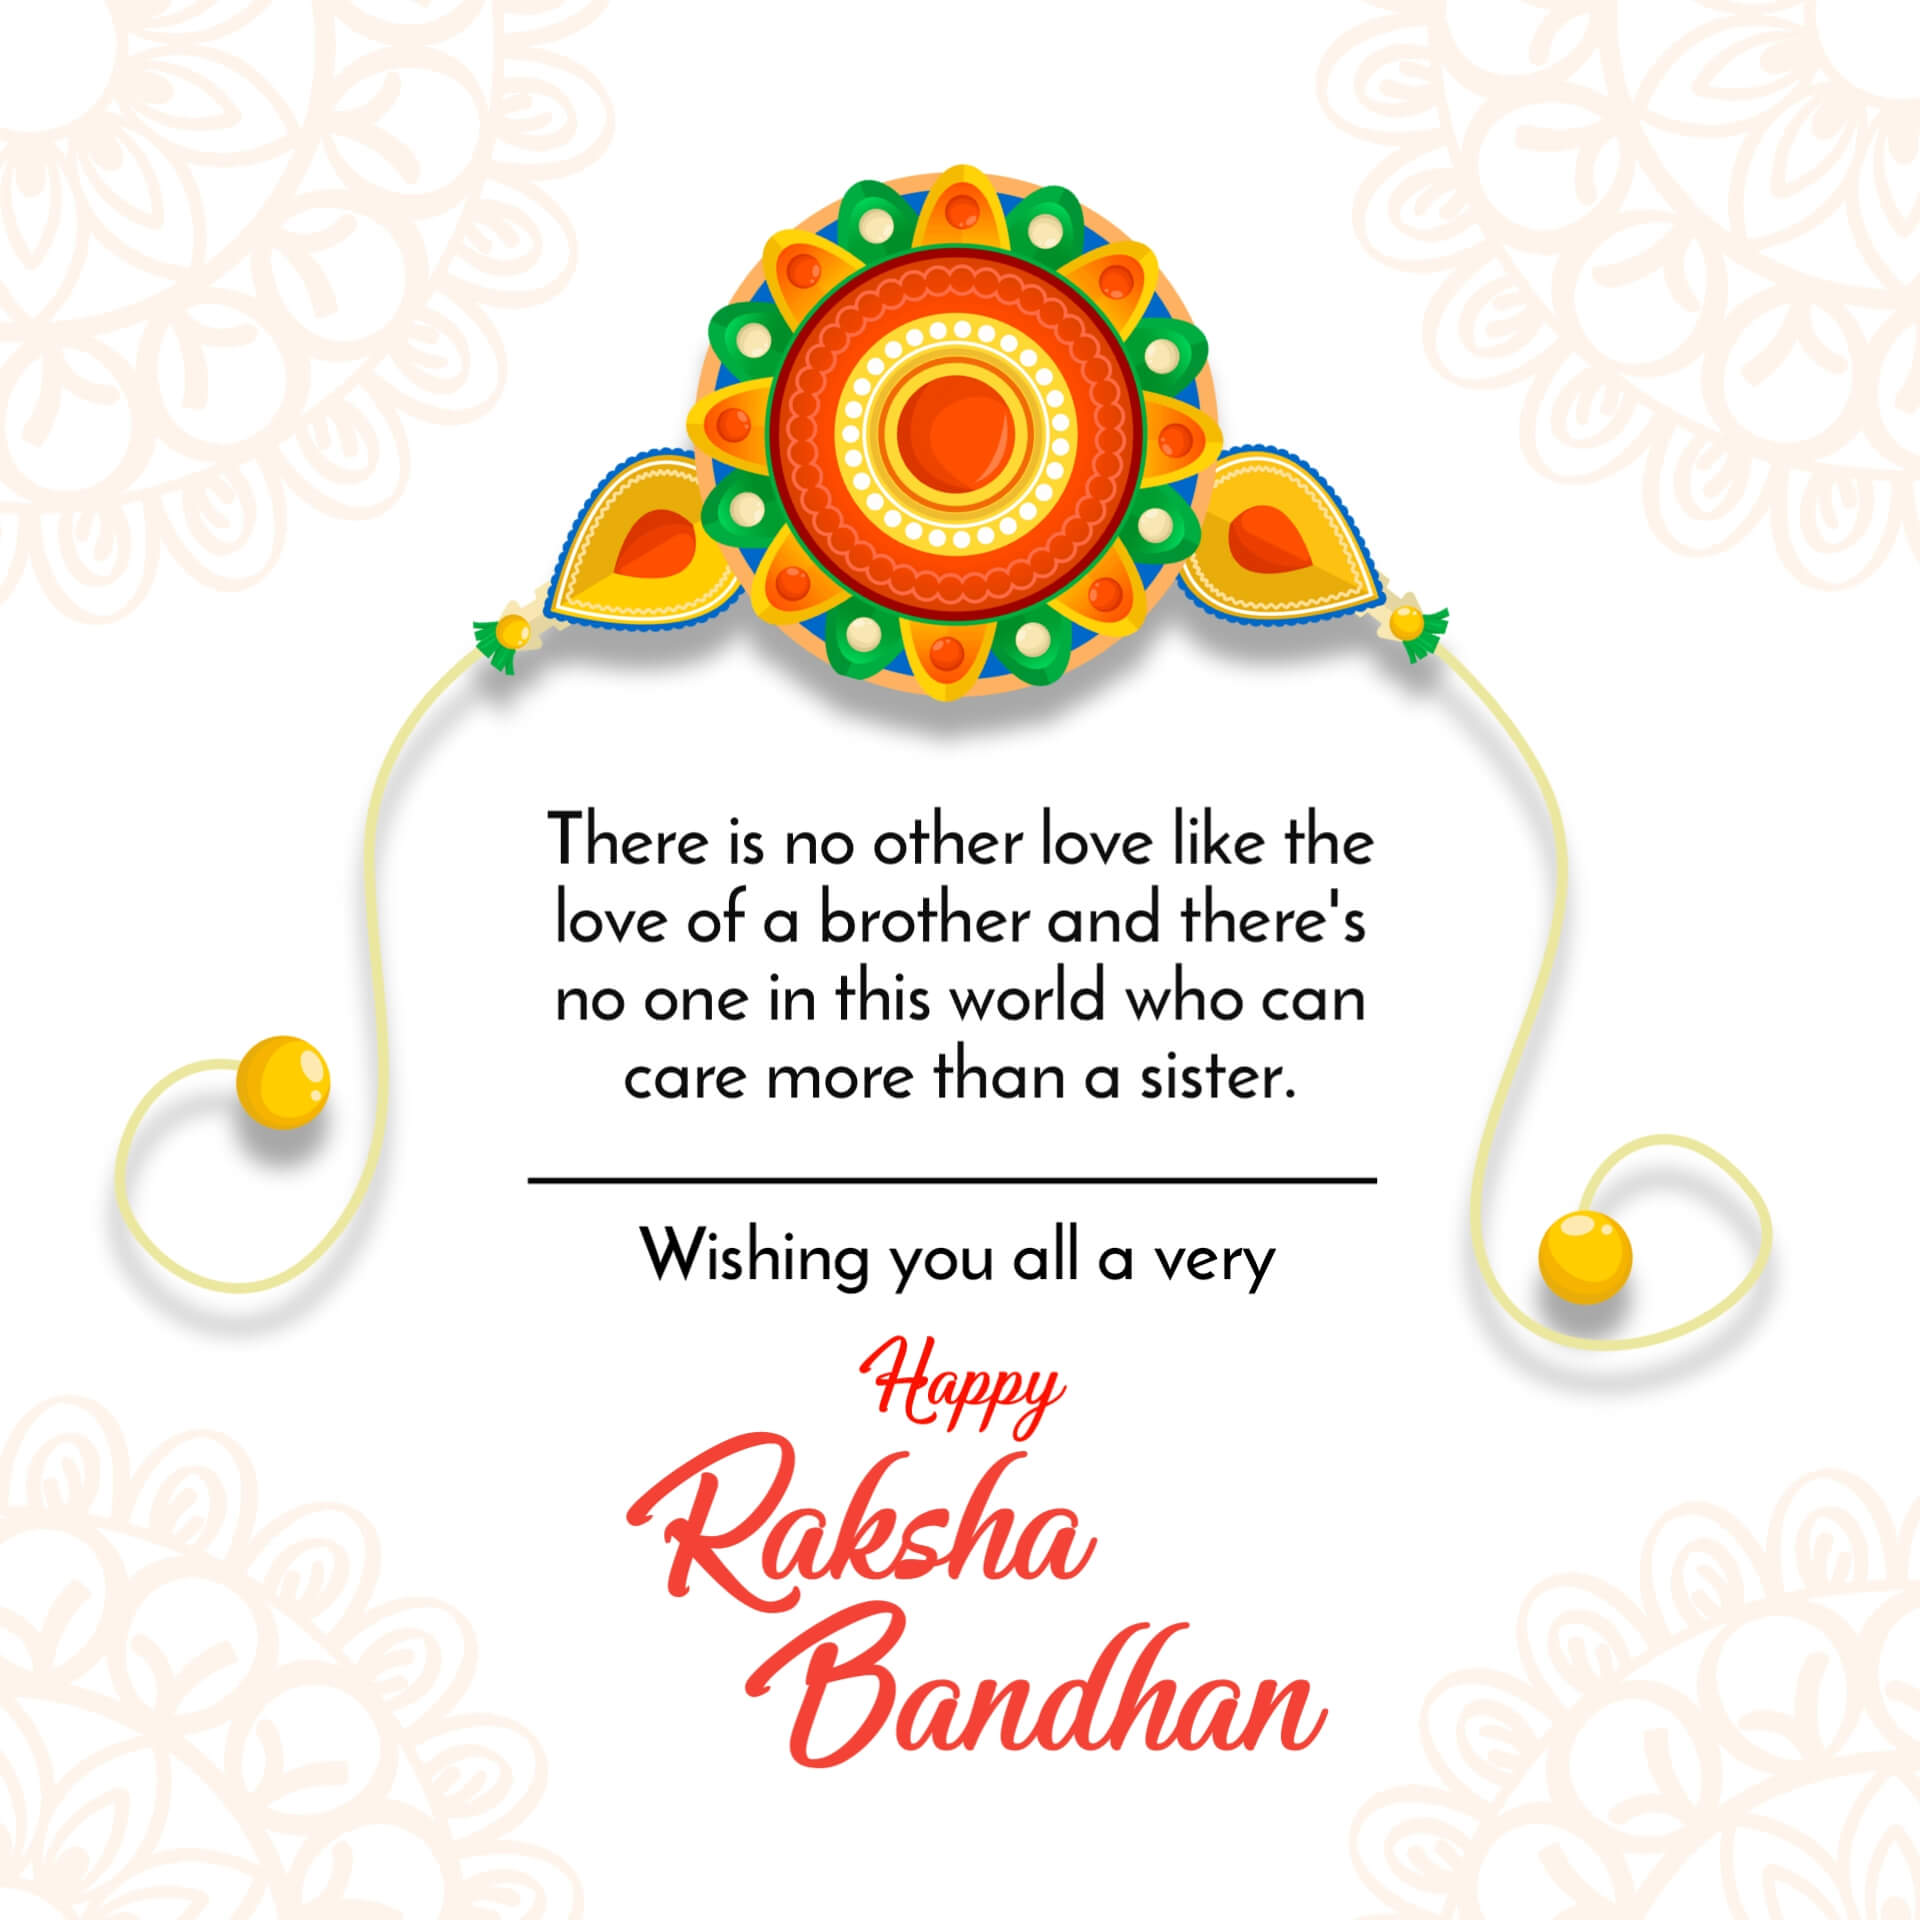 Raksha Bandhan wishes Image